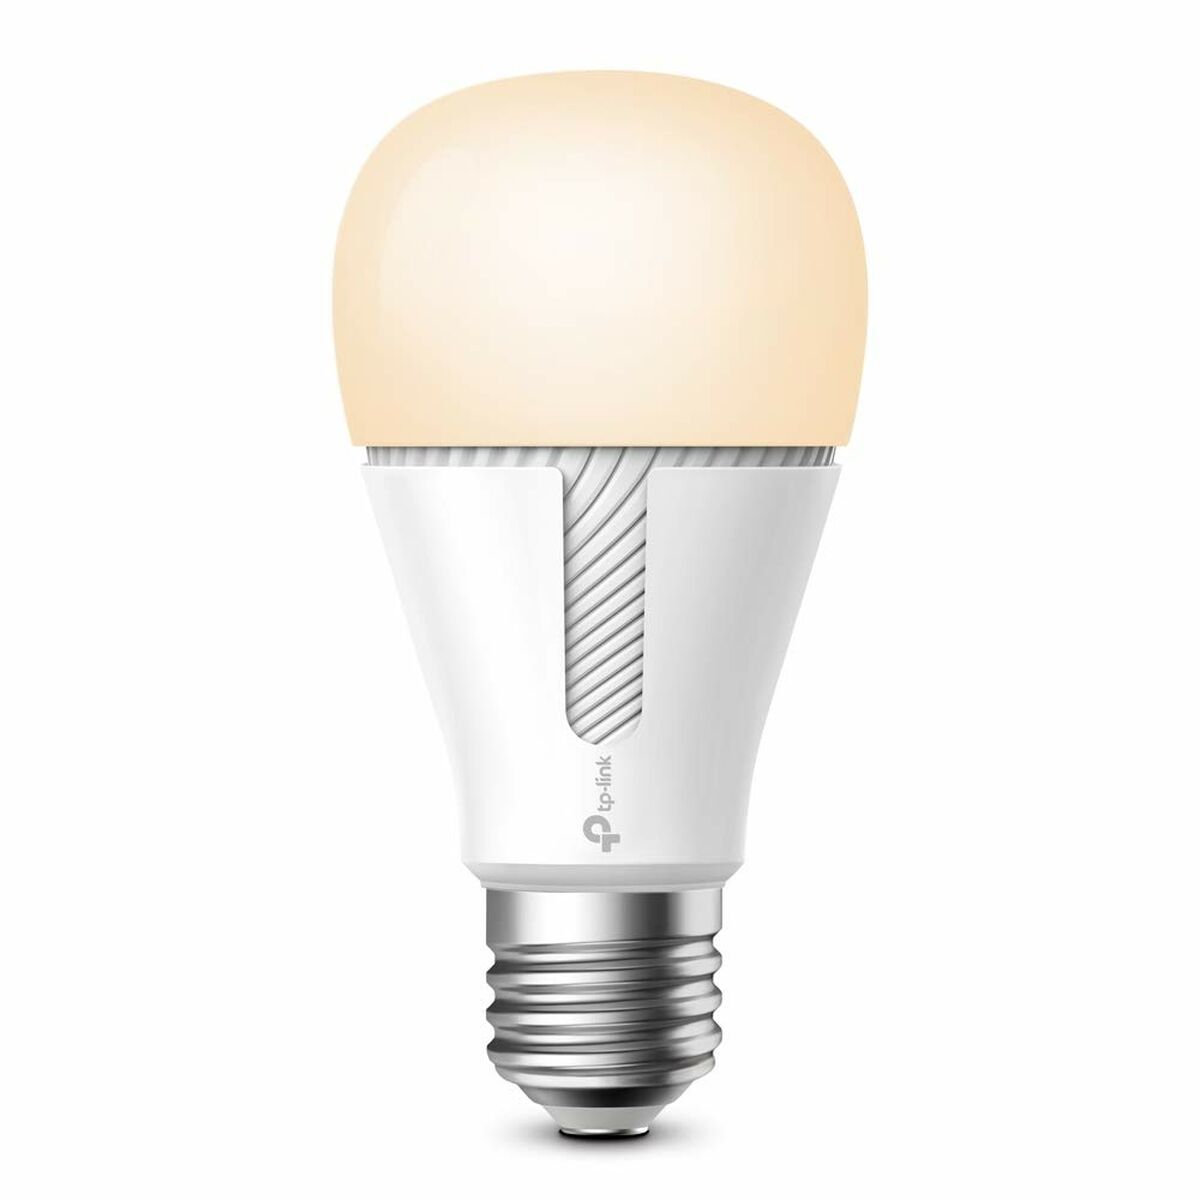 Smart Light bulb TP-Link KL110 (Refurbished A)